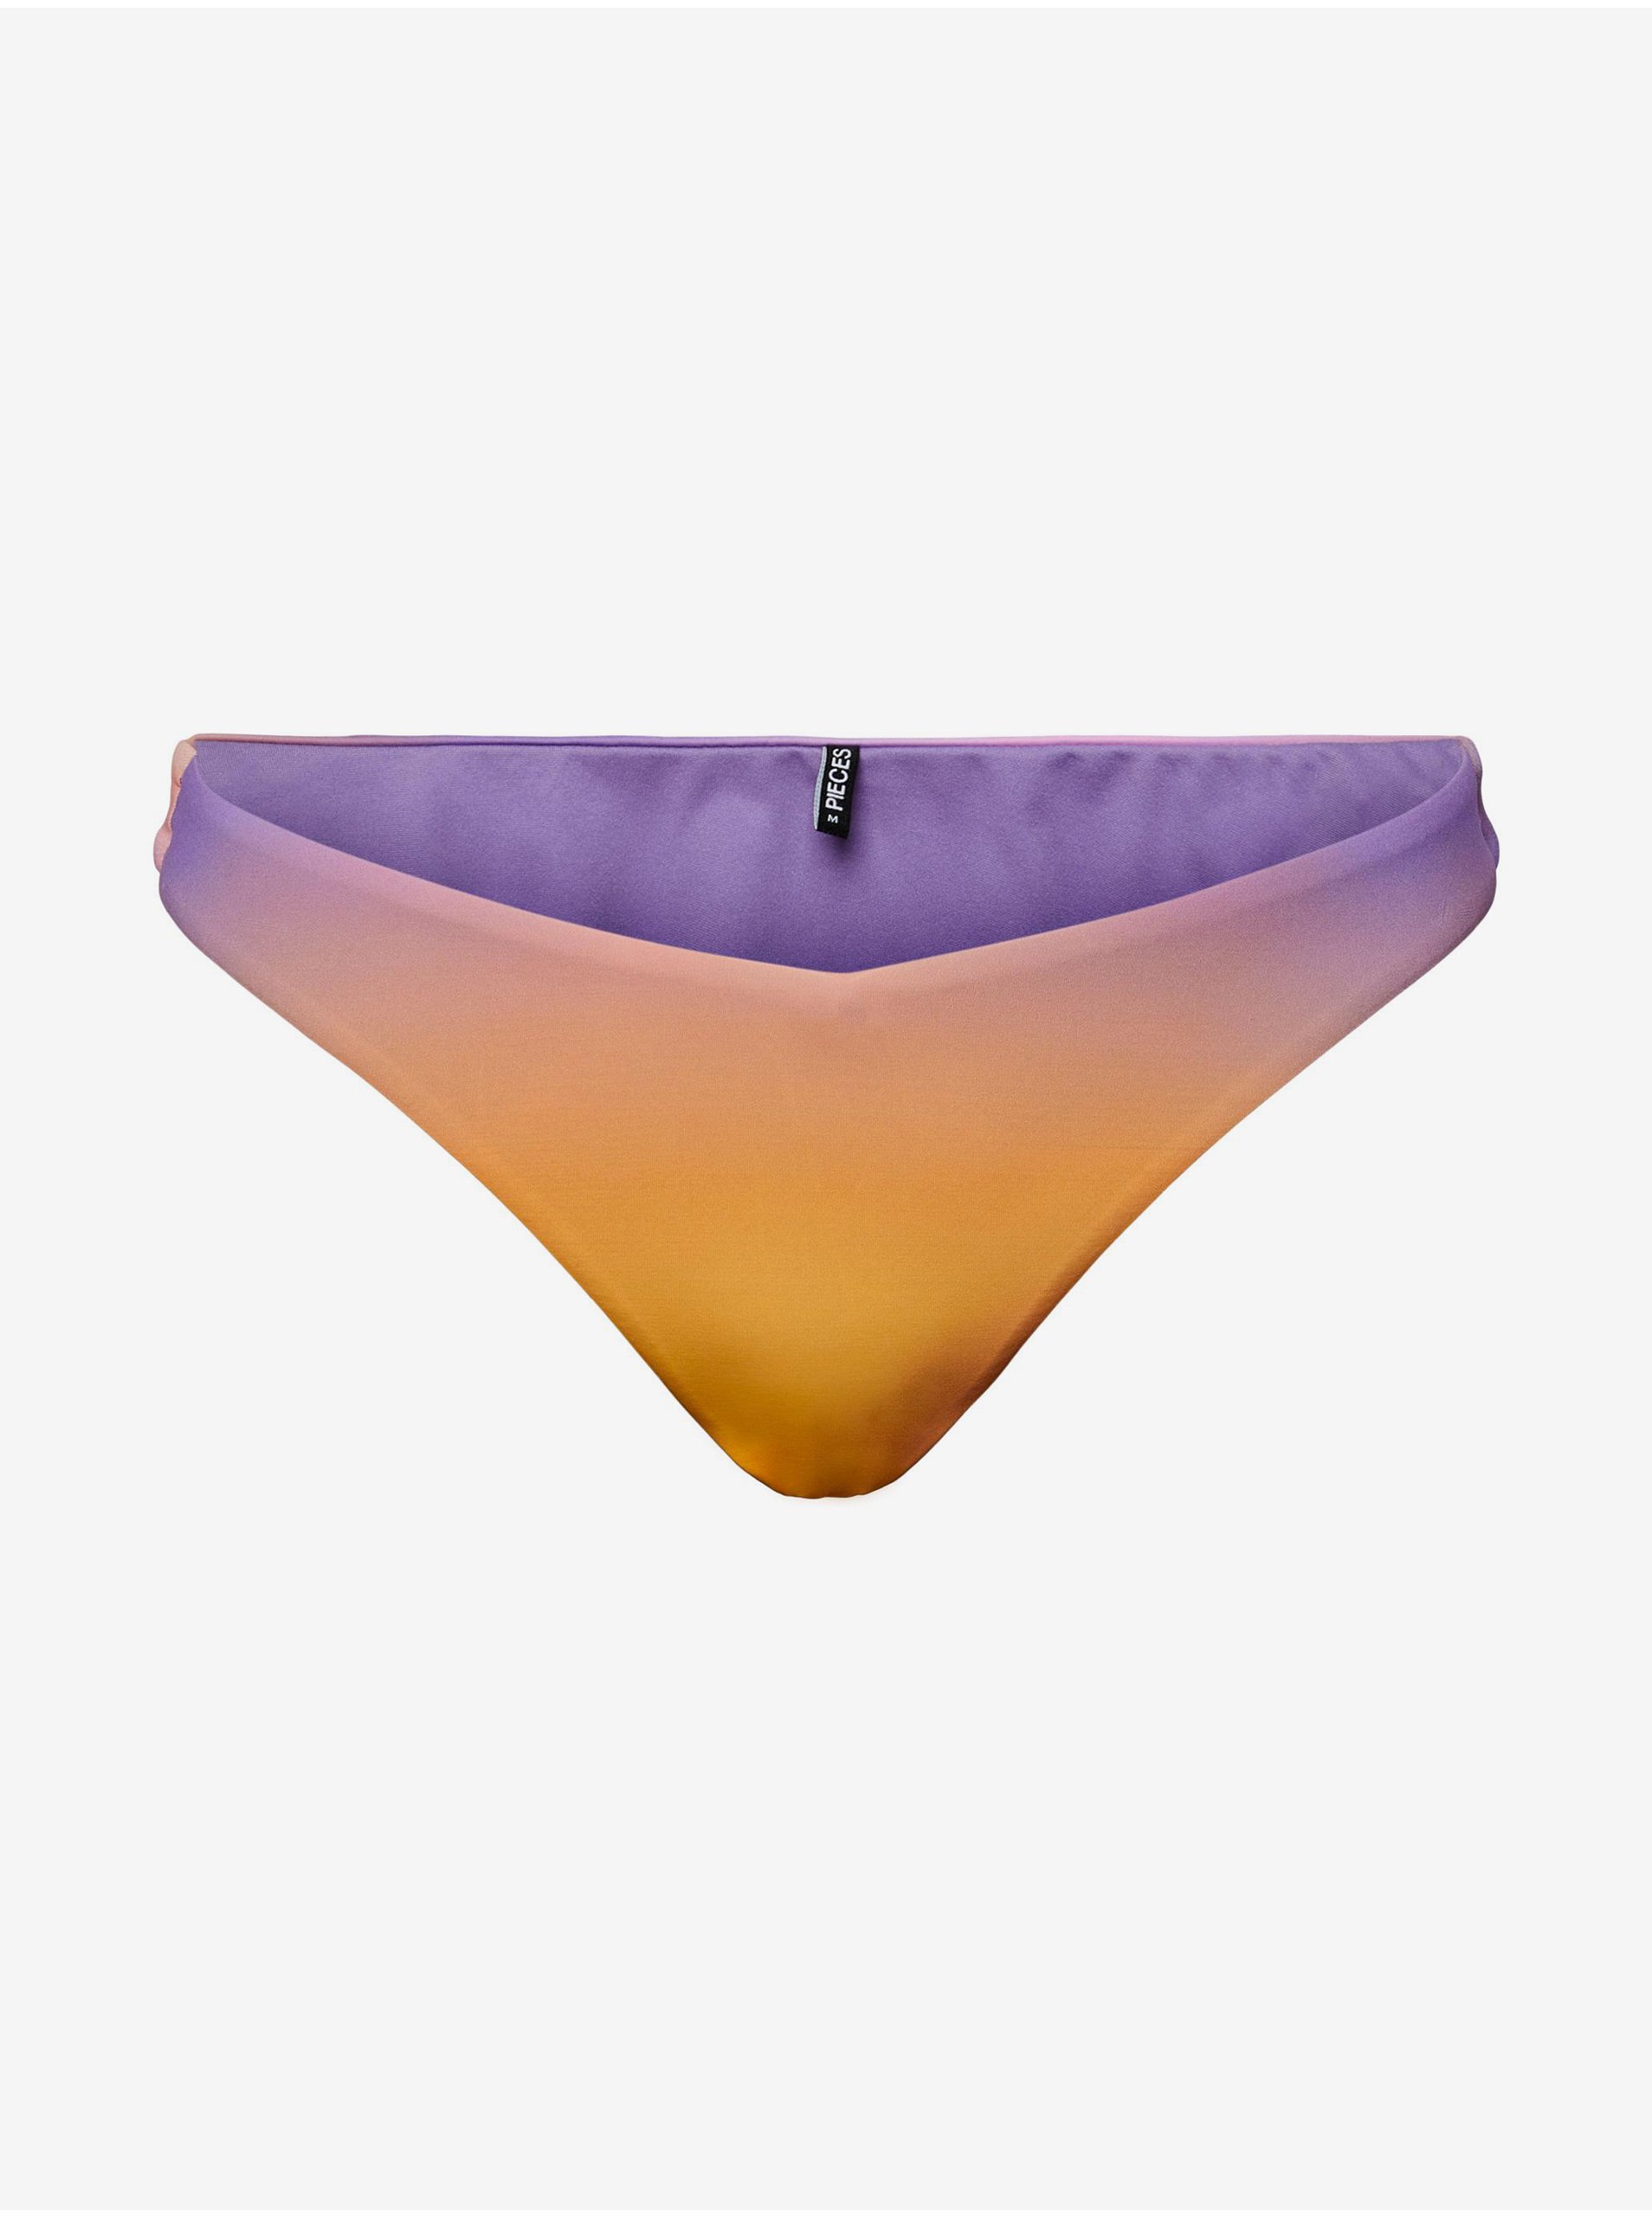 Purple-Orange Women's Swimsuit Bottoms Pieces Bibba - Women